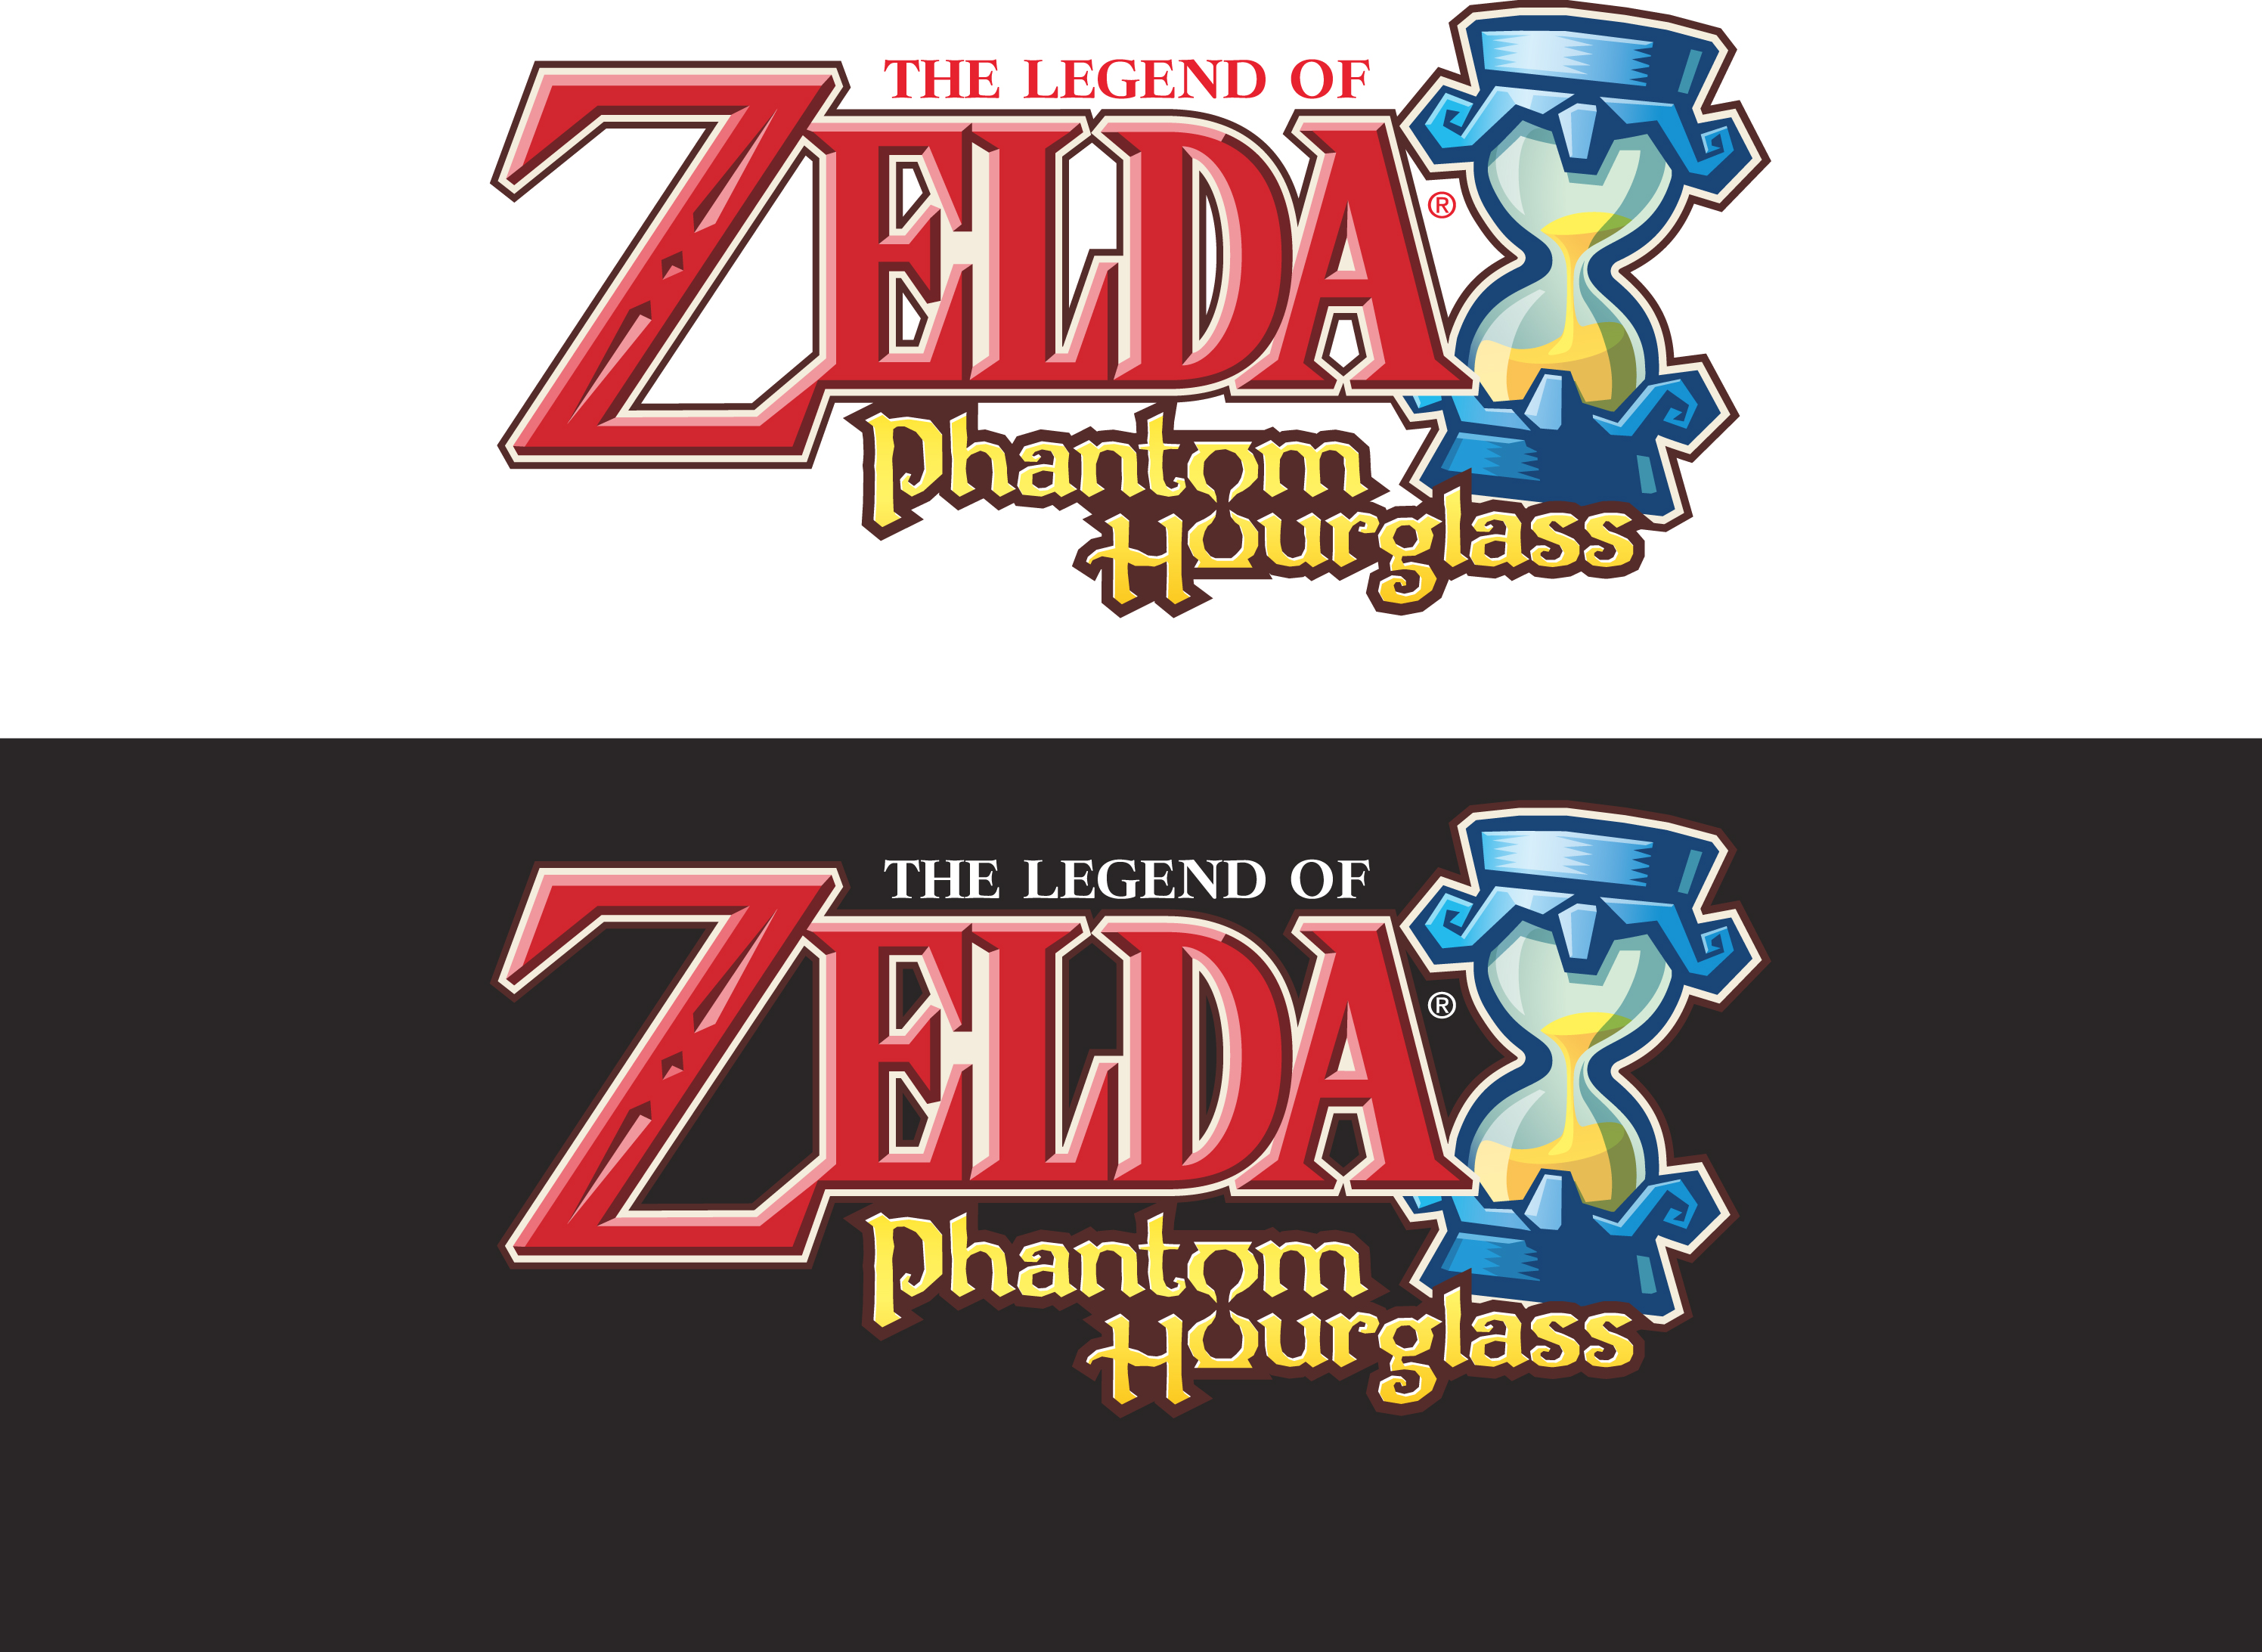 The Legend of Zelda: Phantom Hourglass Picture